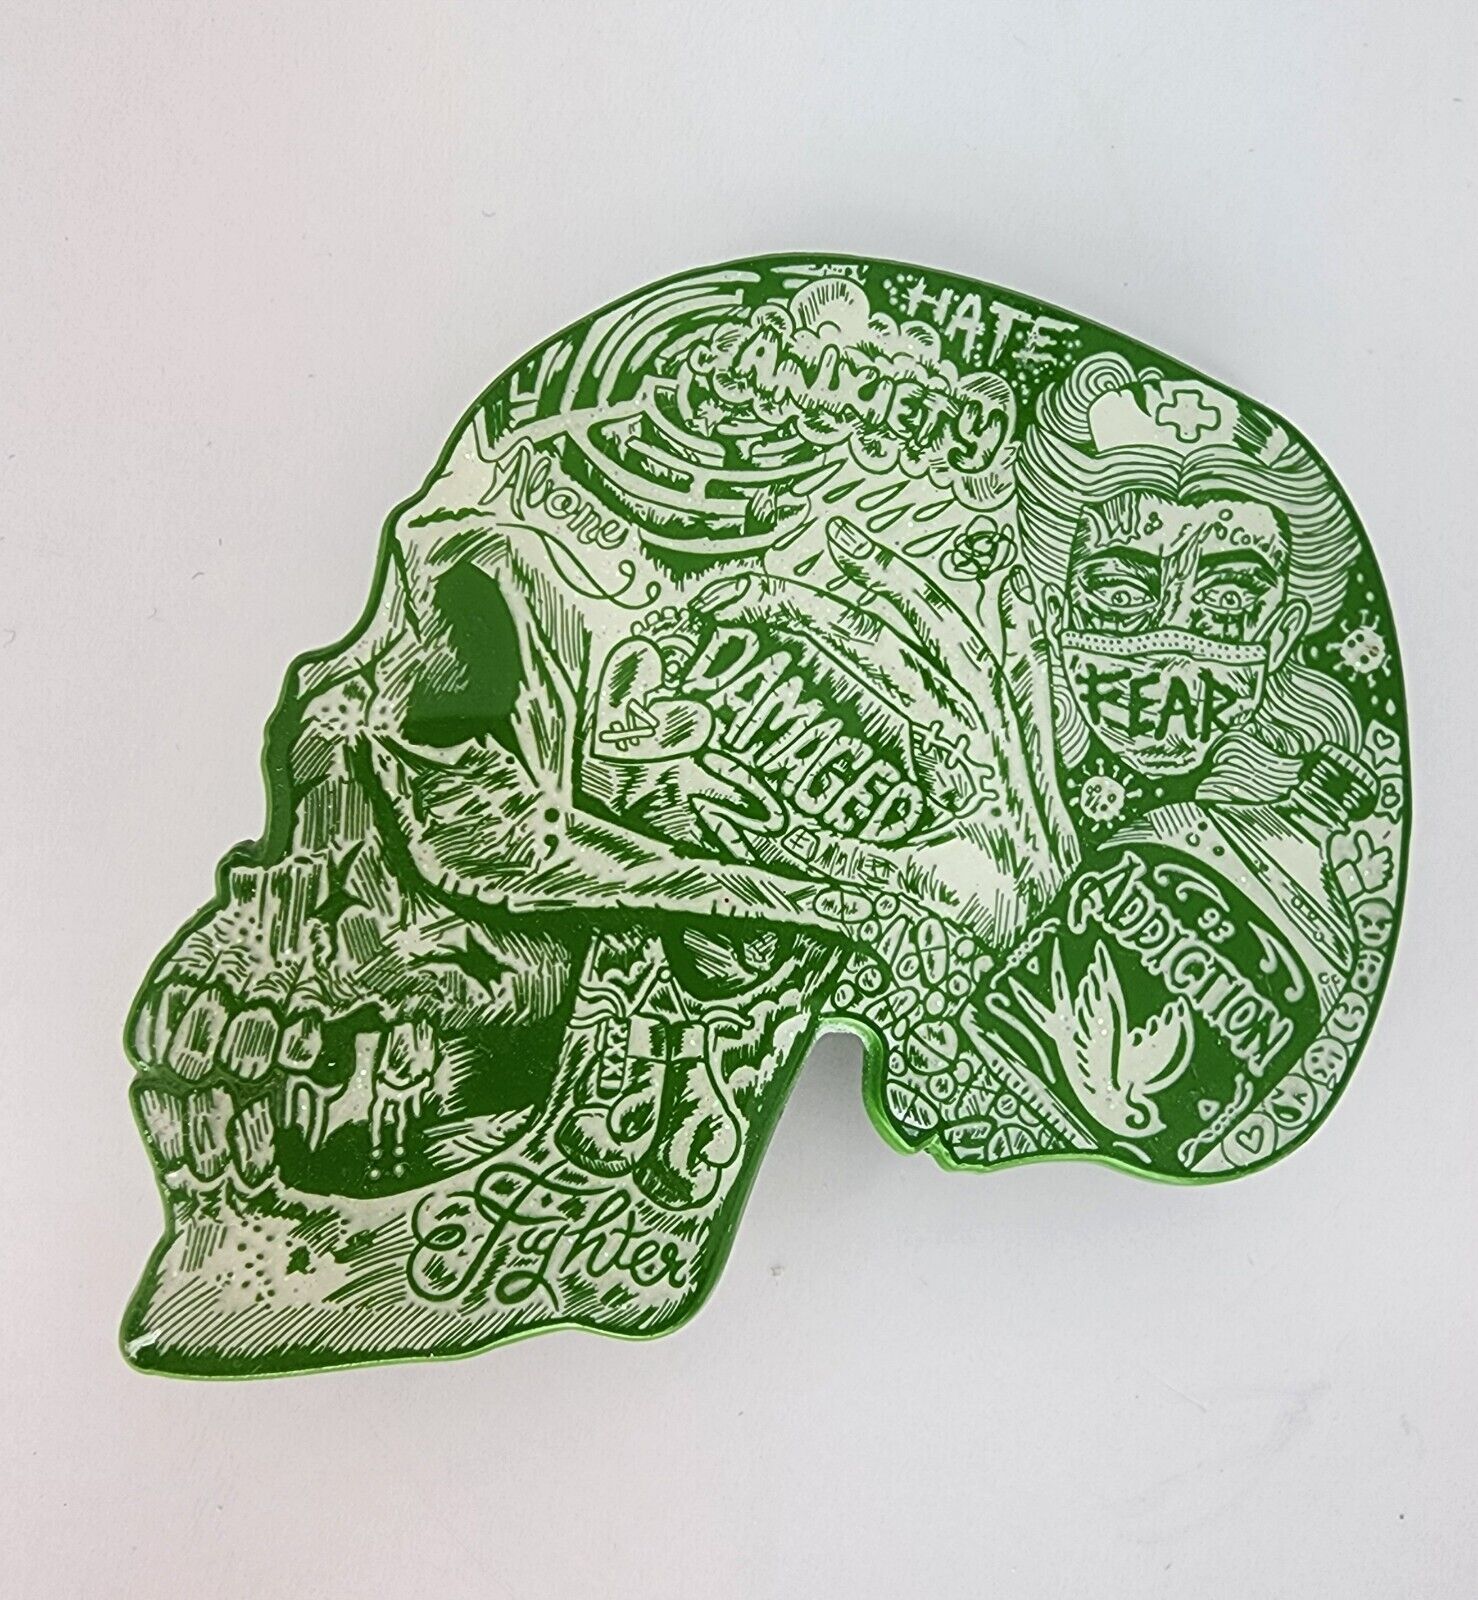 Little Sams Art Mental Health Skull Limited Edition Pin Very RareGREEN VARIANT